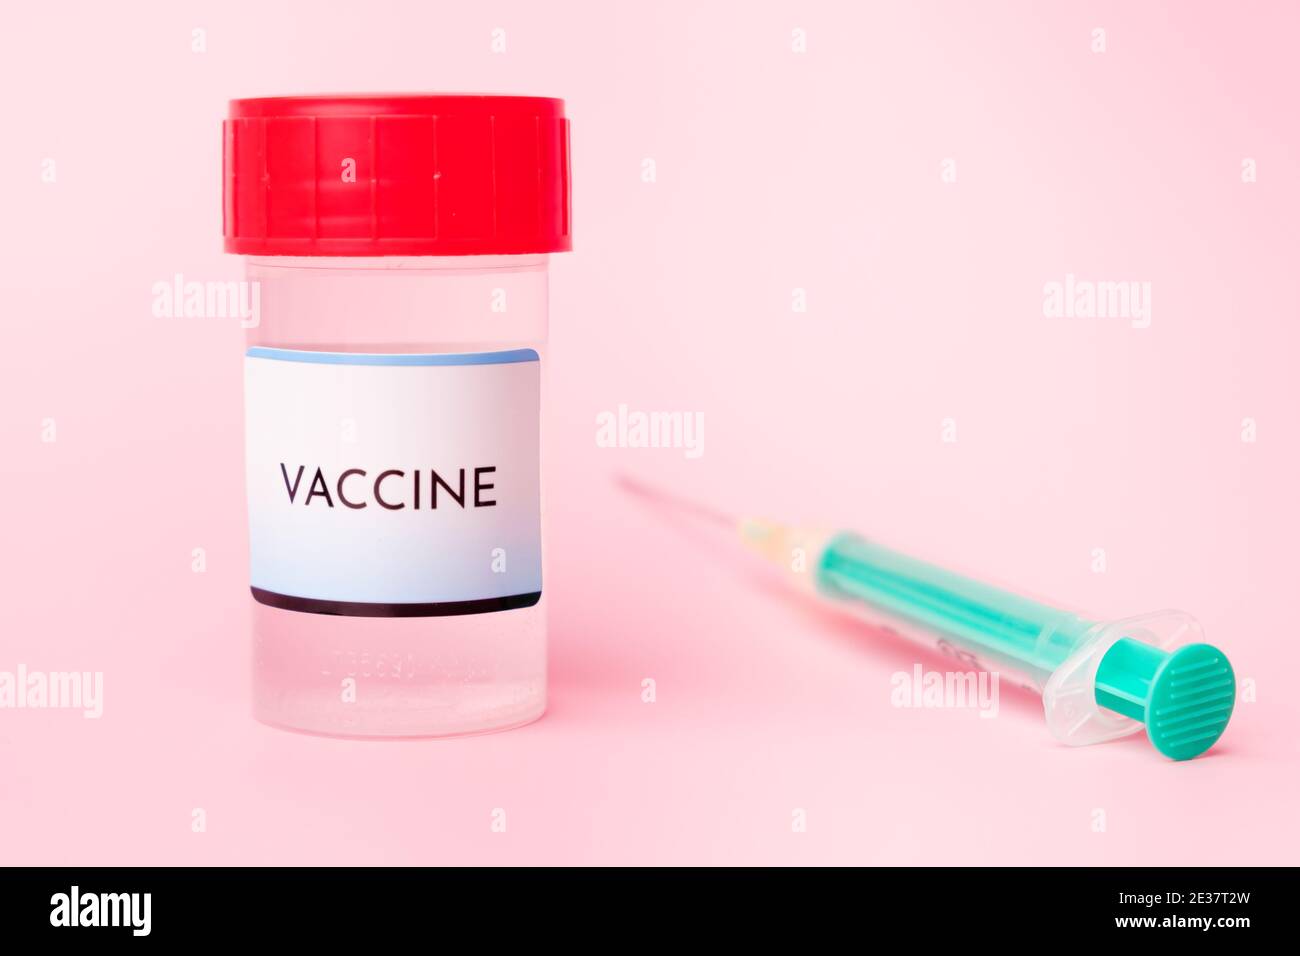 Vaccino Covid-19 nel flacone e siringa monouso per iniezione su fondo rosa. Prevenzione del coronavirus, Sars-Cov-2. Foto Stock